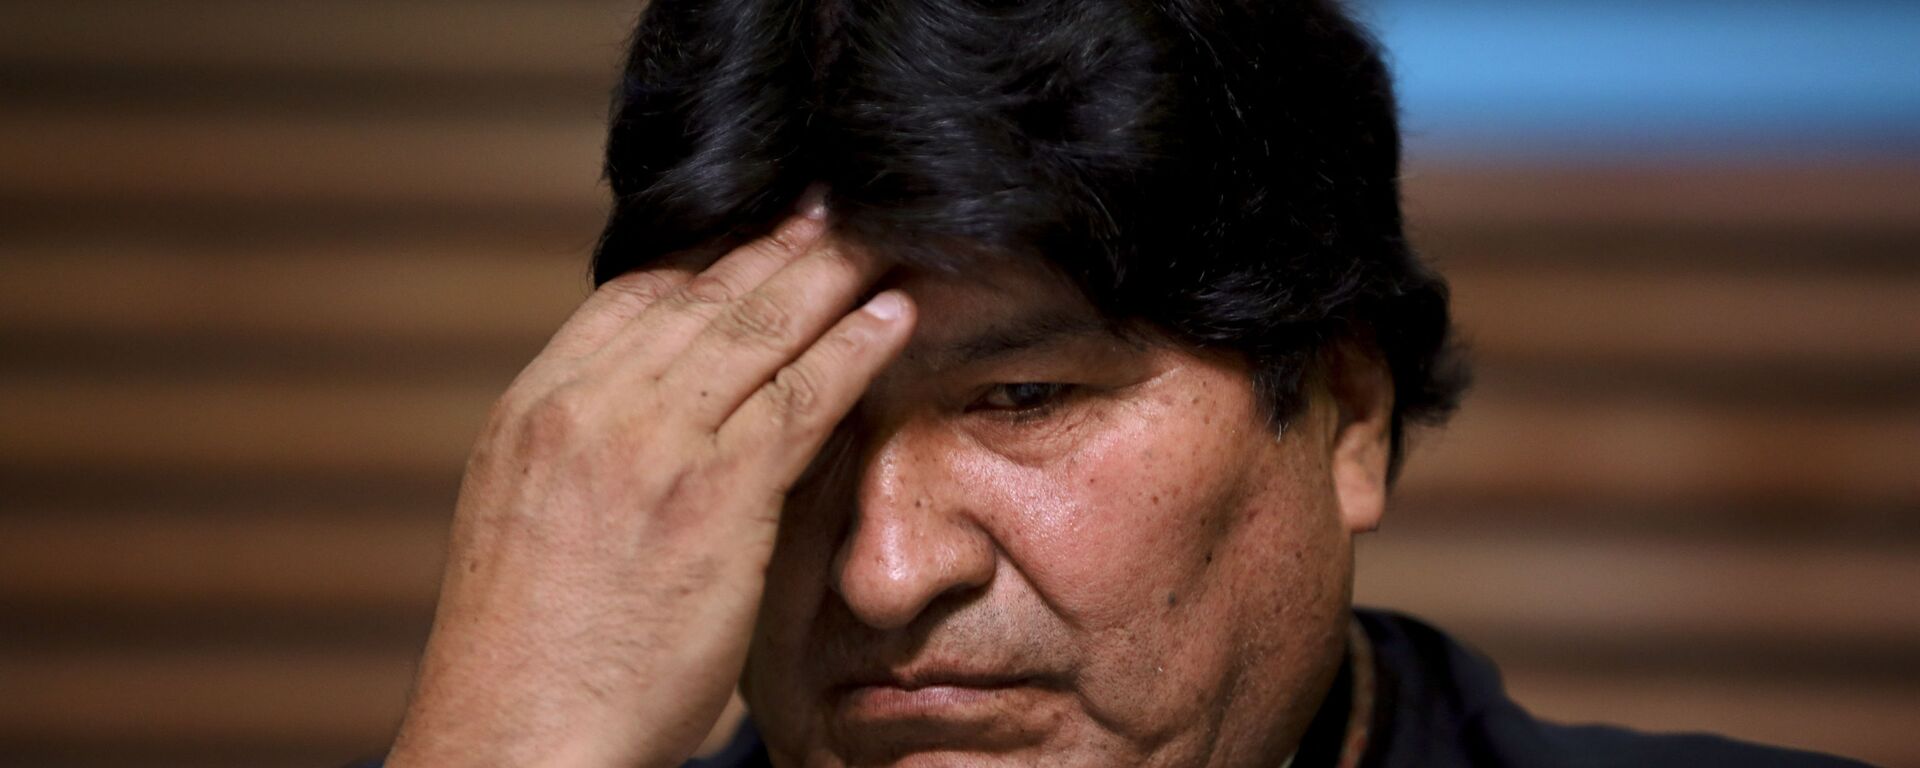 Evo Morales, expresidente de Bolivia - Sputnik Mundo, 1920, 09.07.2021